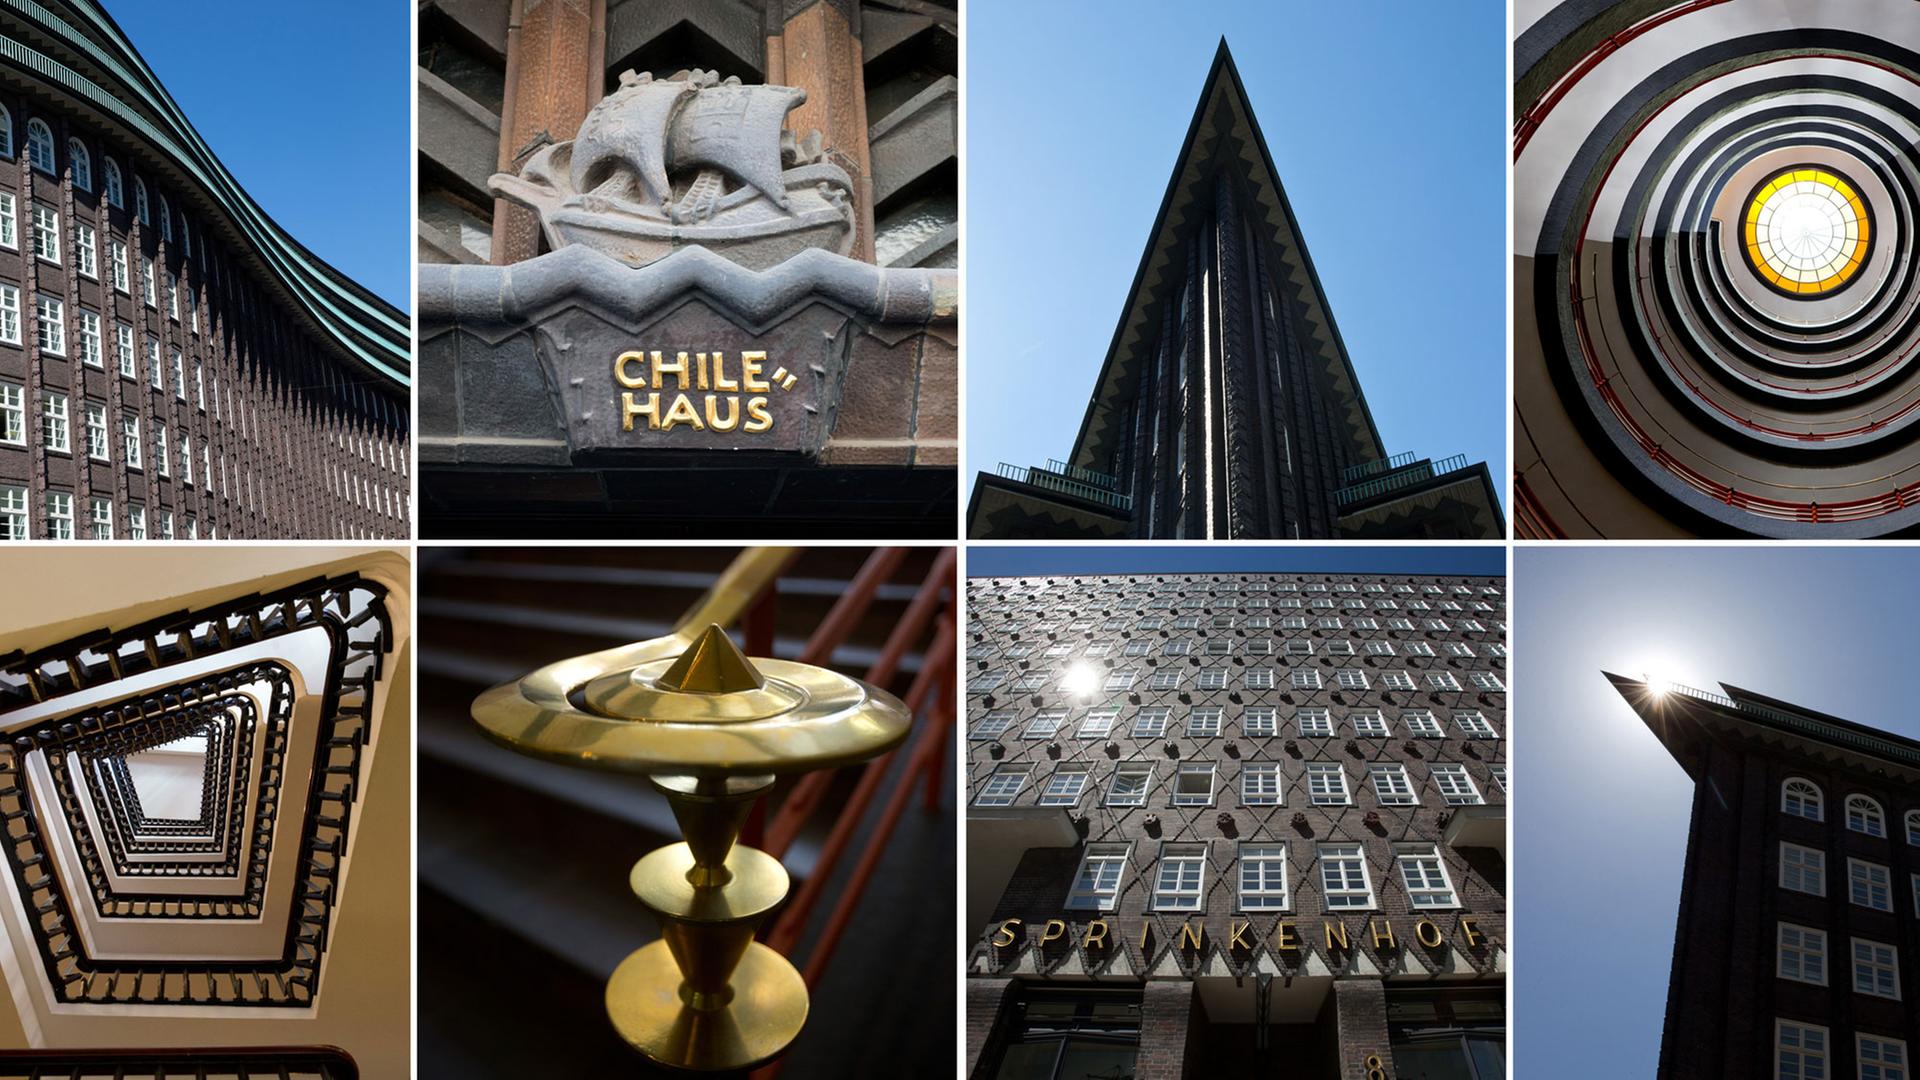 Details und Ansichten von den Gebäuden "Chilehaus" und "Sprinkenhof" im Kontorhausviertel in Hamburg, aufgenommen am 01.07.2015. Das Kontorhausviertel und die Speicherstadt wurden zum Weltkulturerbe ernannt.